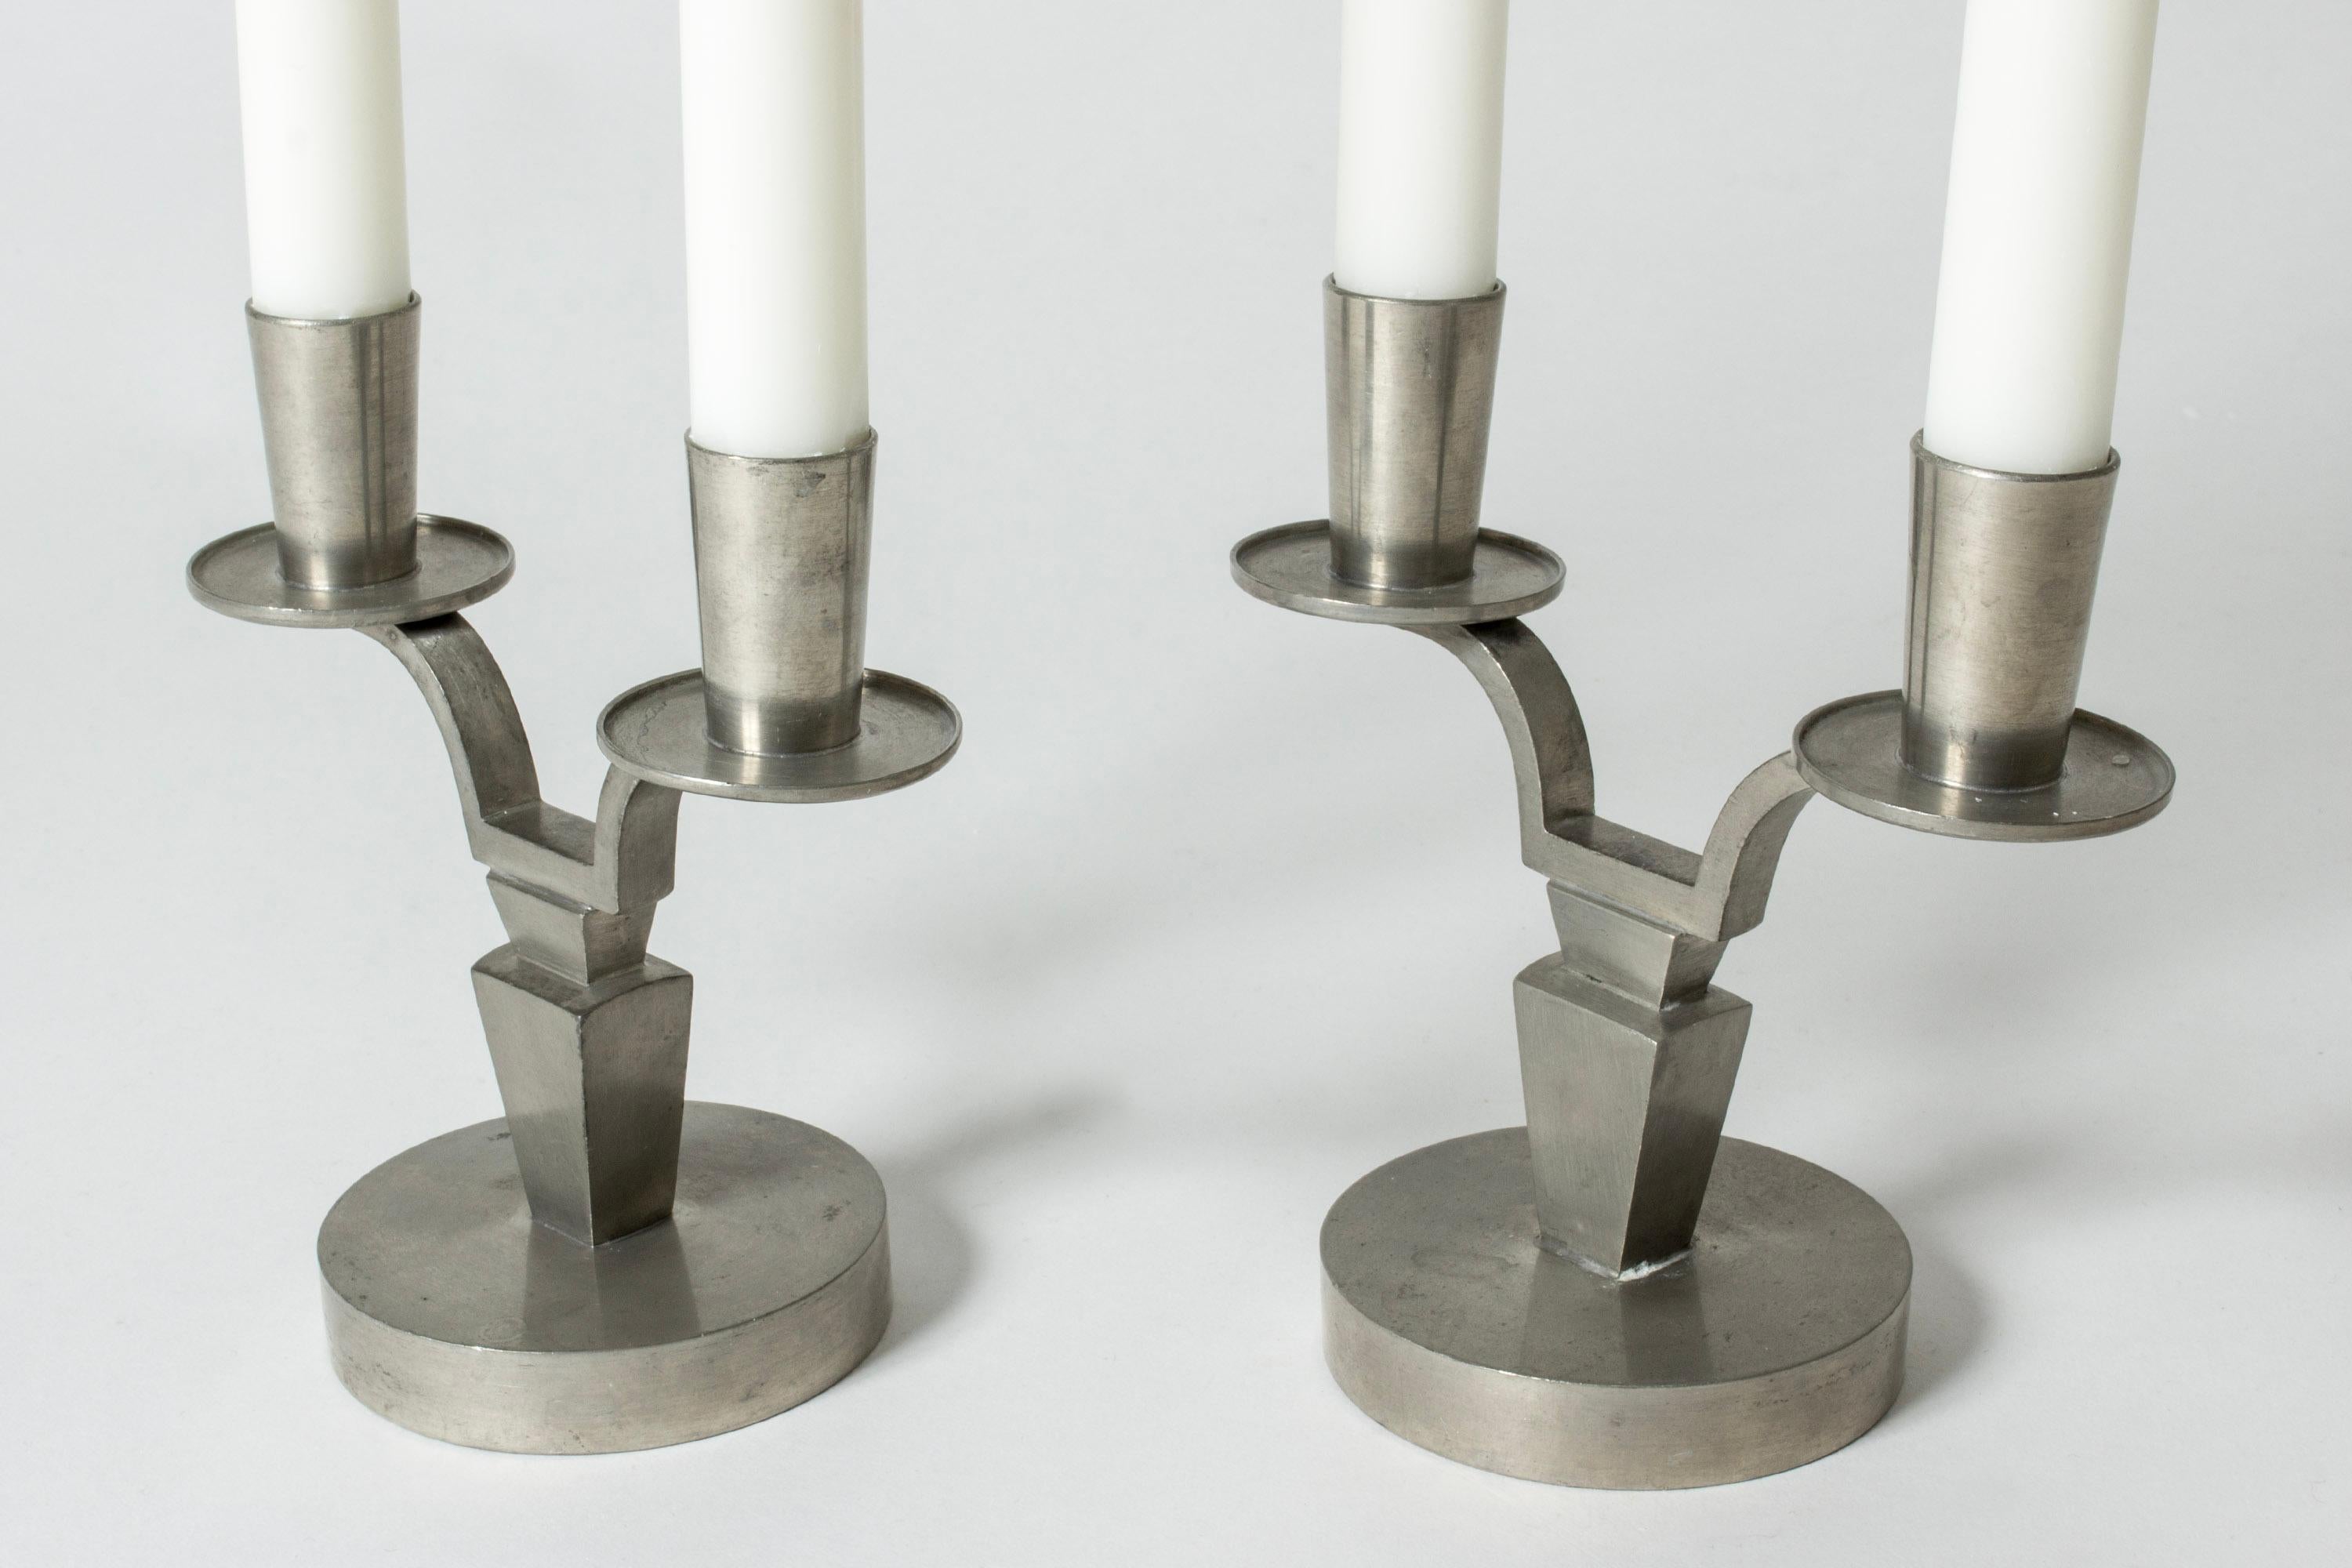 Swedish Modernist Pewter Candlesticks by Nils Fougstedt for Svenskt Tenn, Sweden, 1944